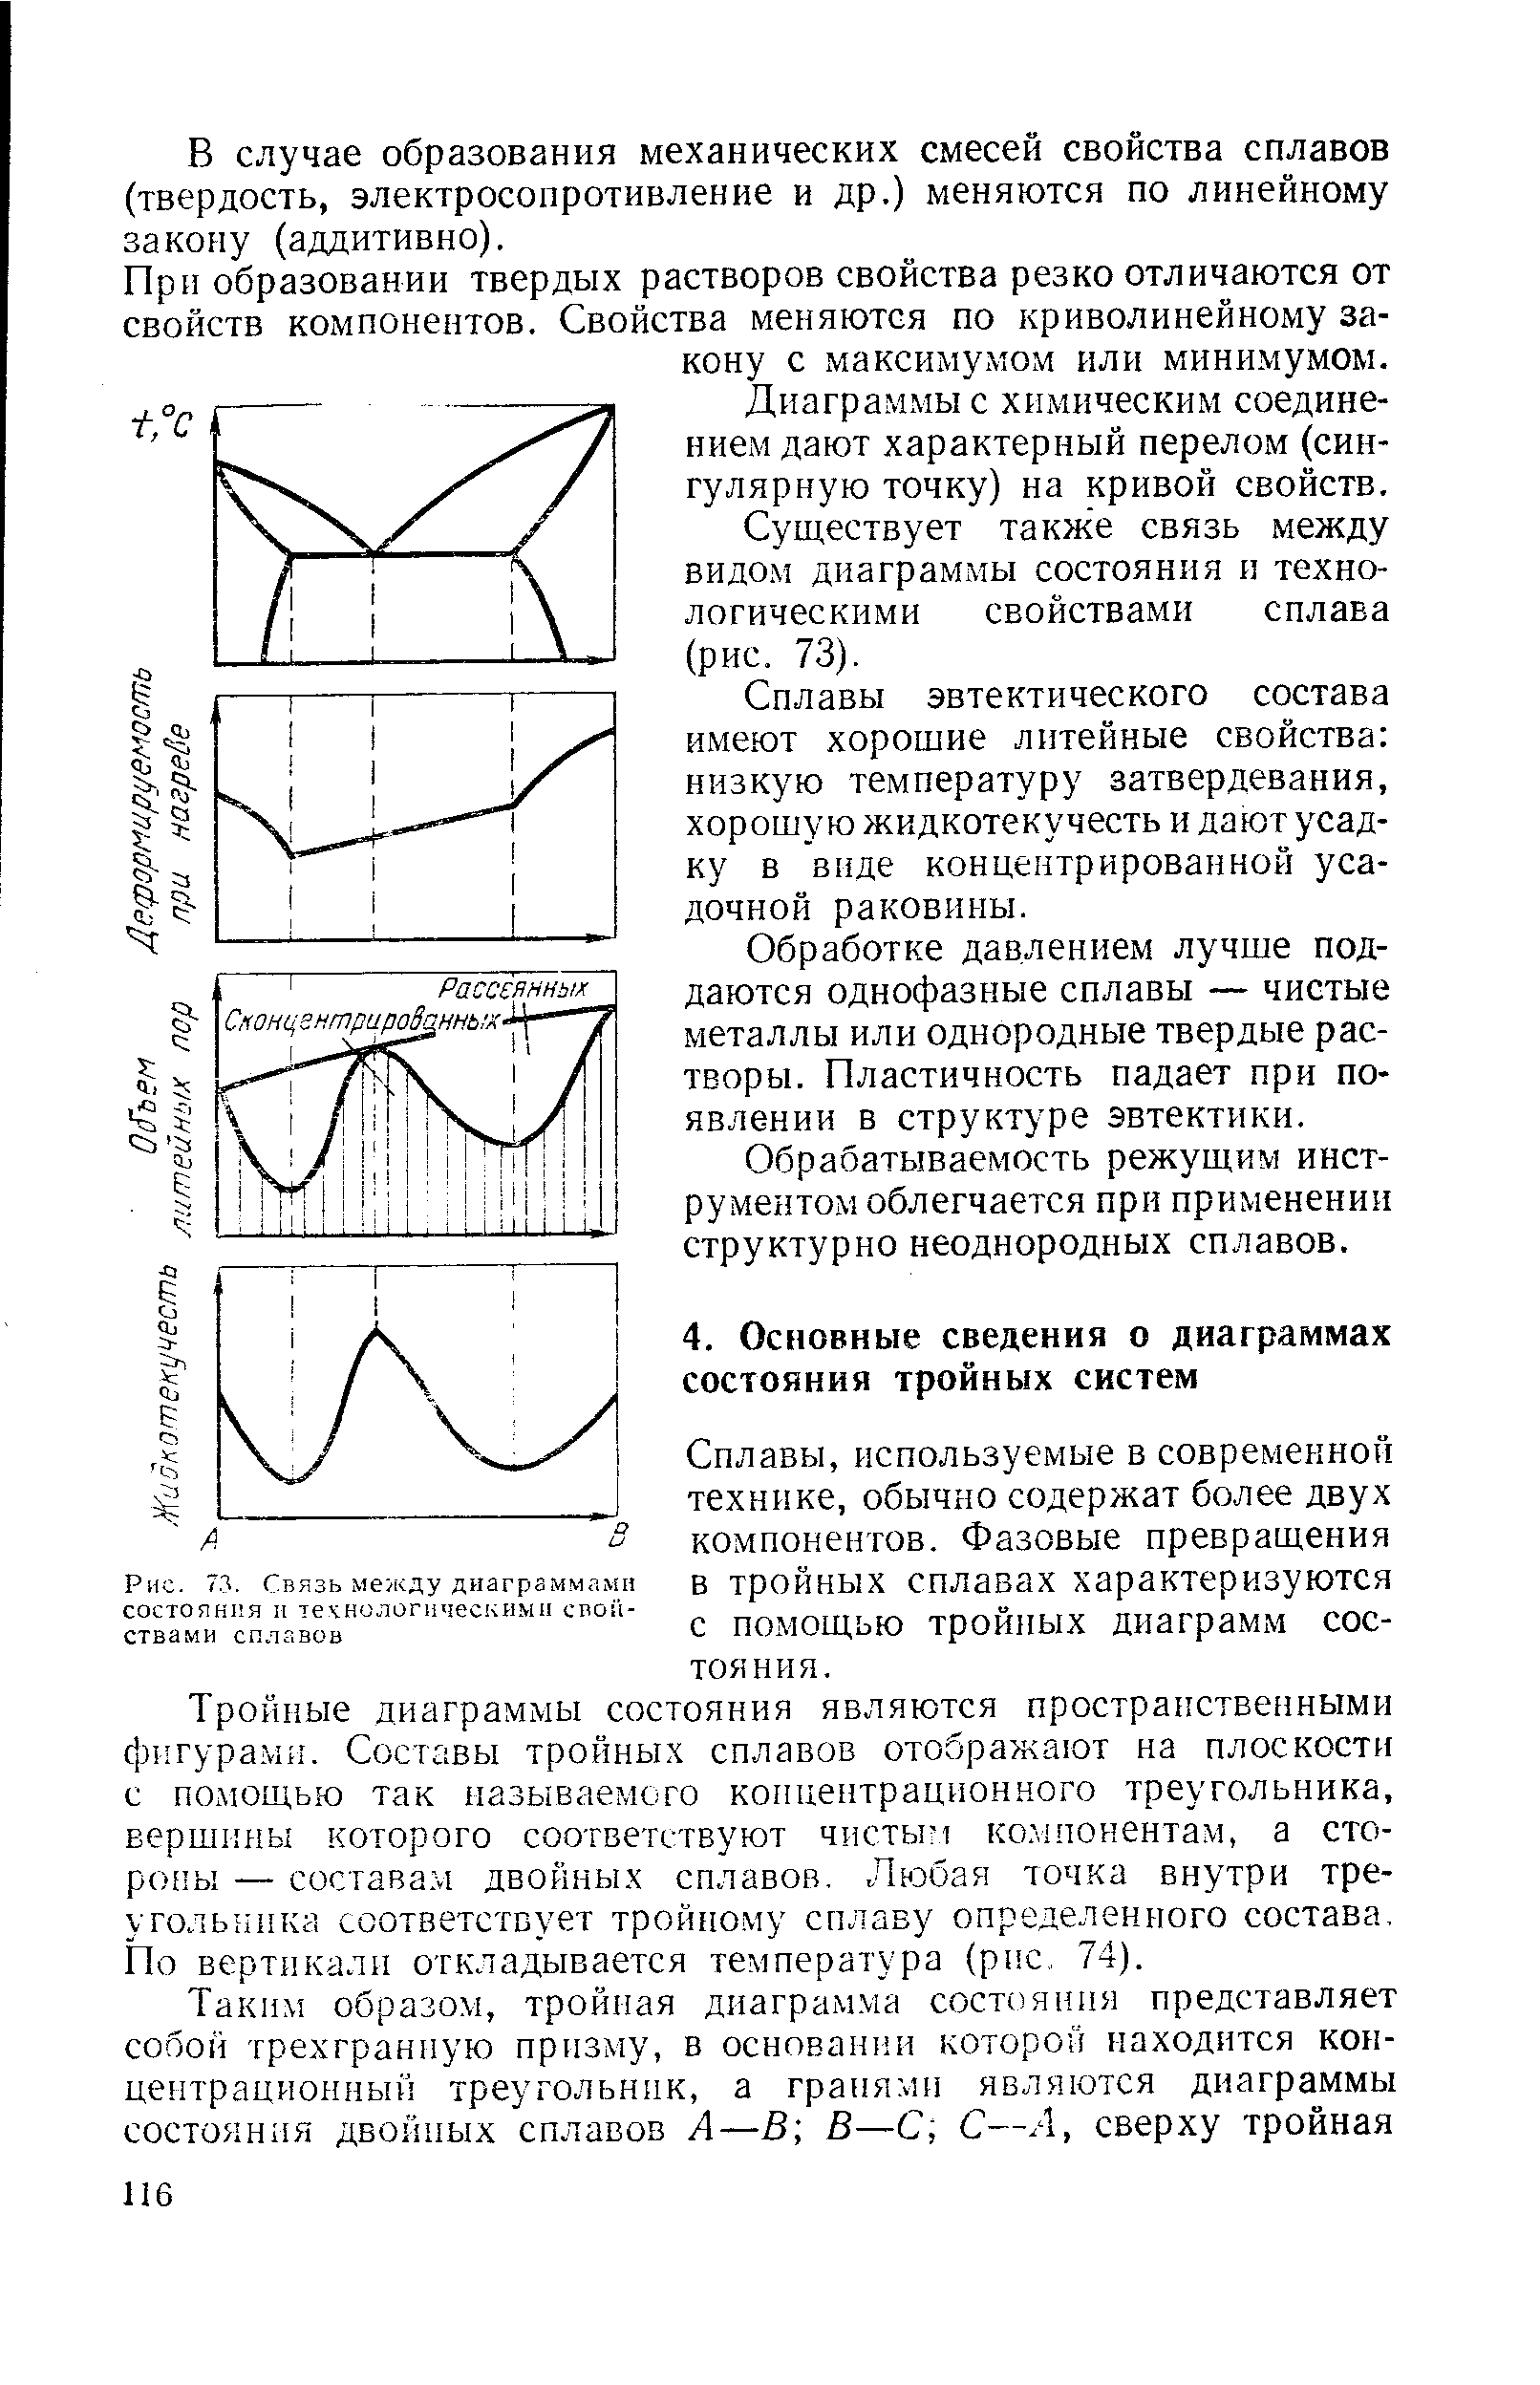 Сплавы, используемые в современной технике, обычно содержат более двух компонентов. Фазовые превращения в тройных сплавах характеризуются с помощью тройных диаграмм состояния.
